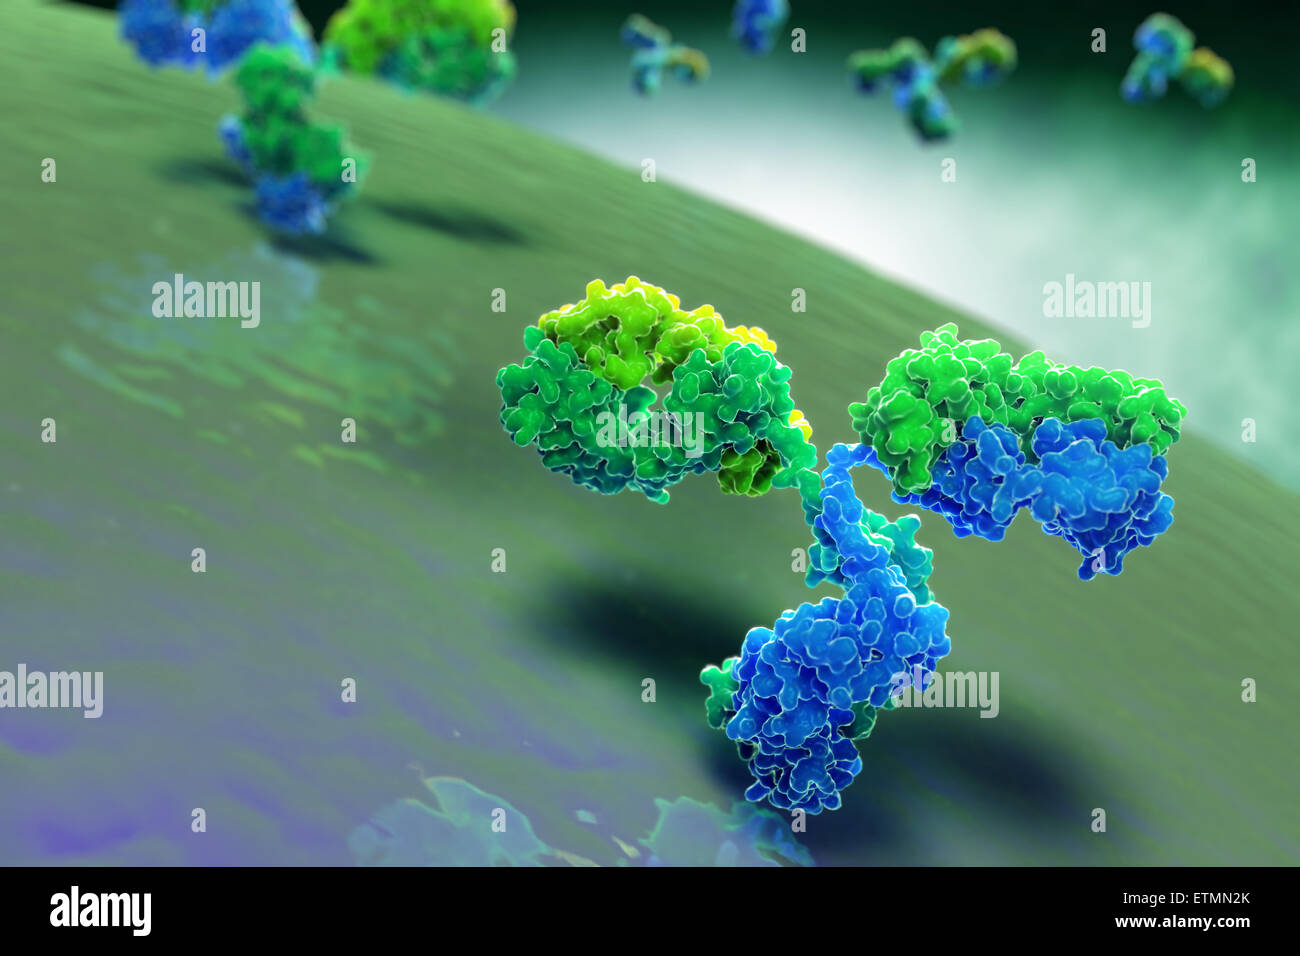 Stilisierte Illustration des y-förmigen Antikörper 1IGT, Teil des menschlichen Immunsystems. Stockfoto